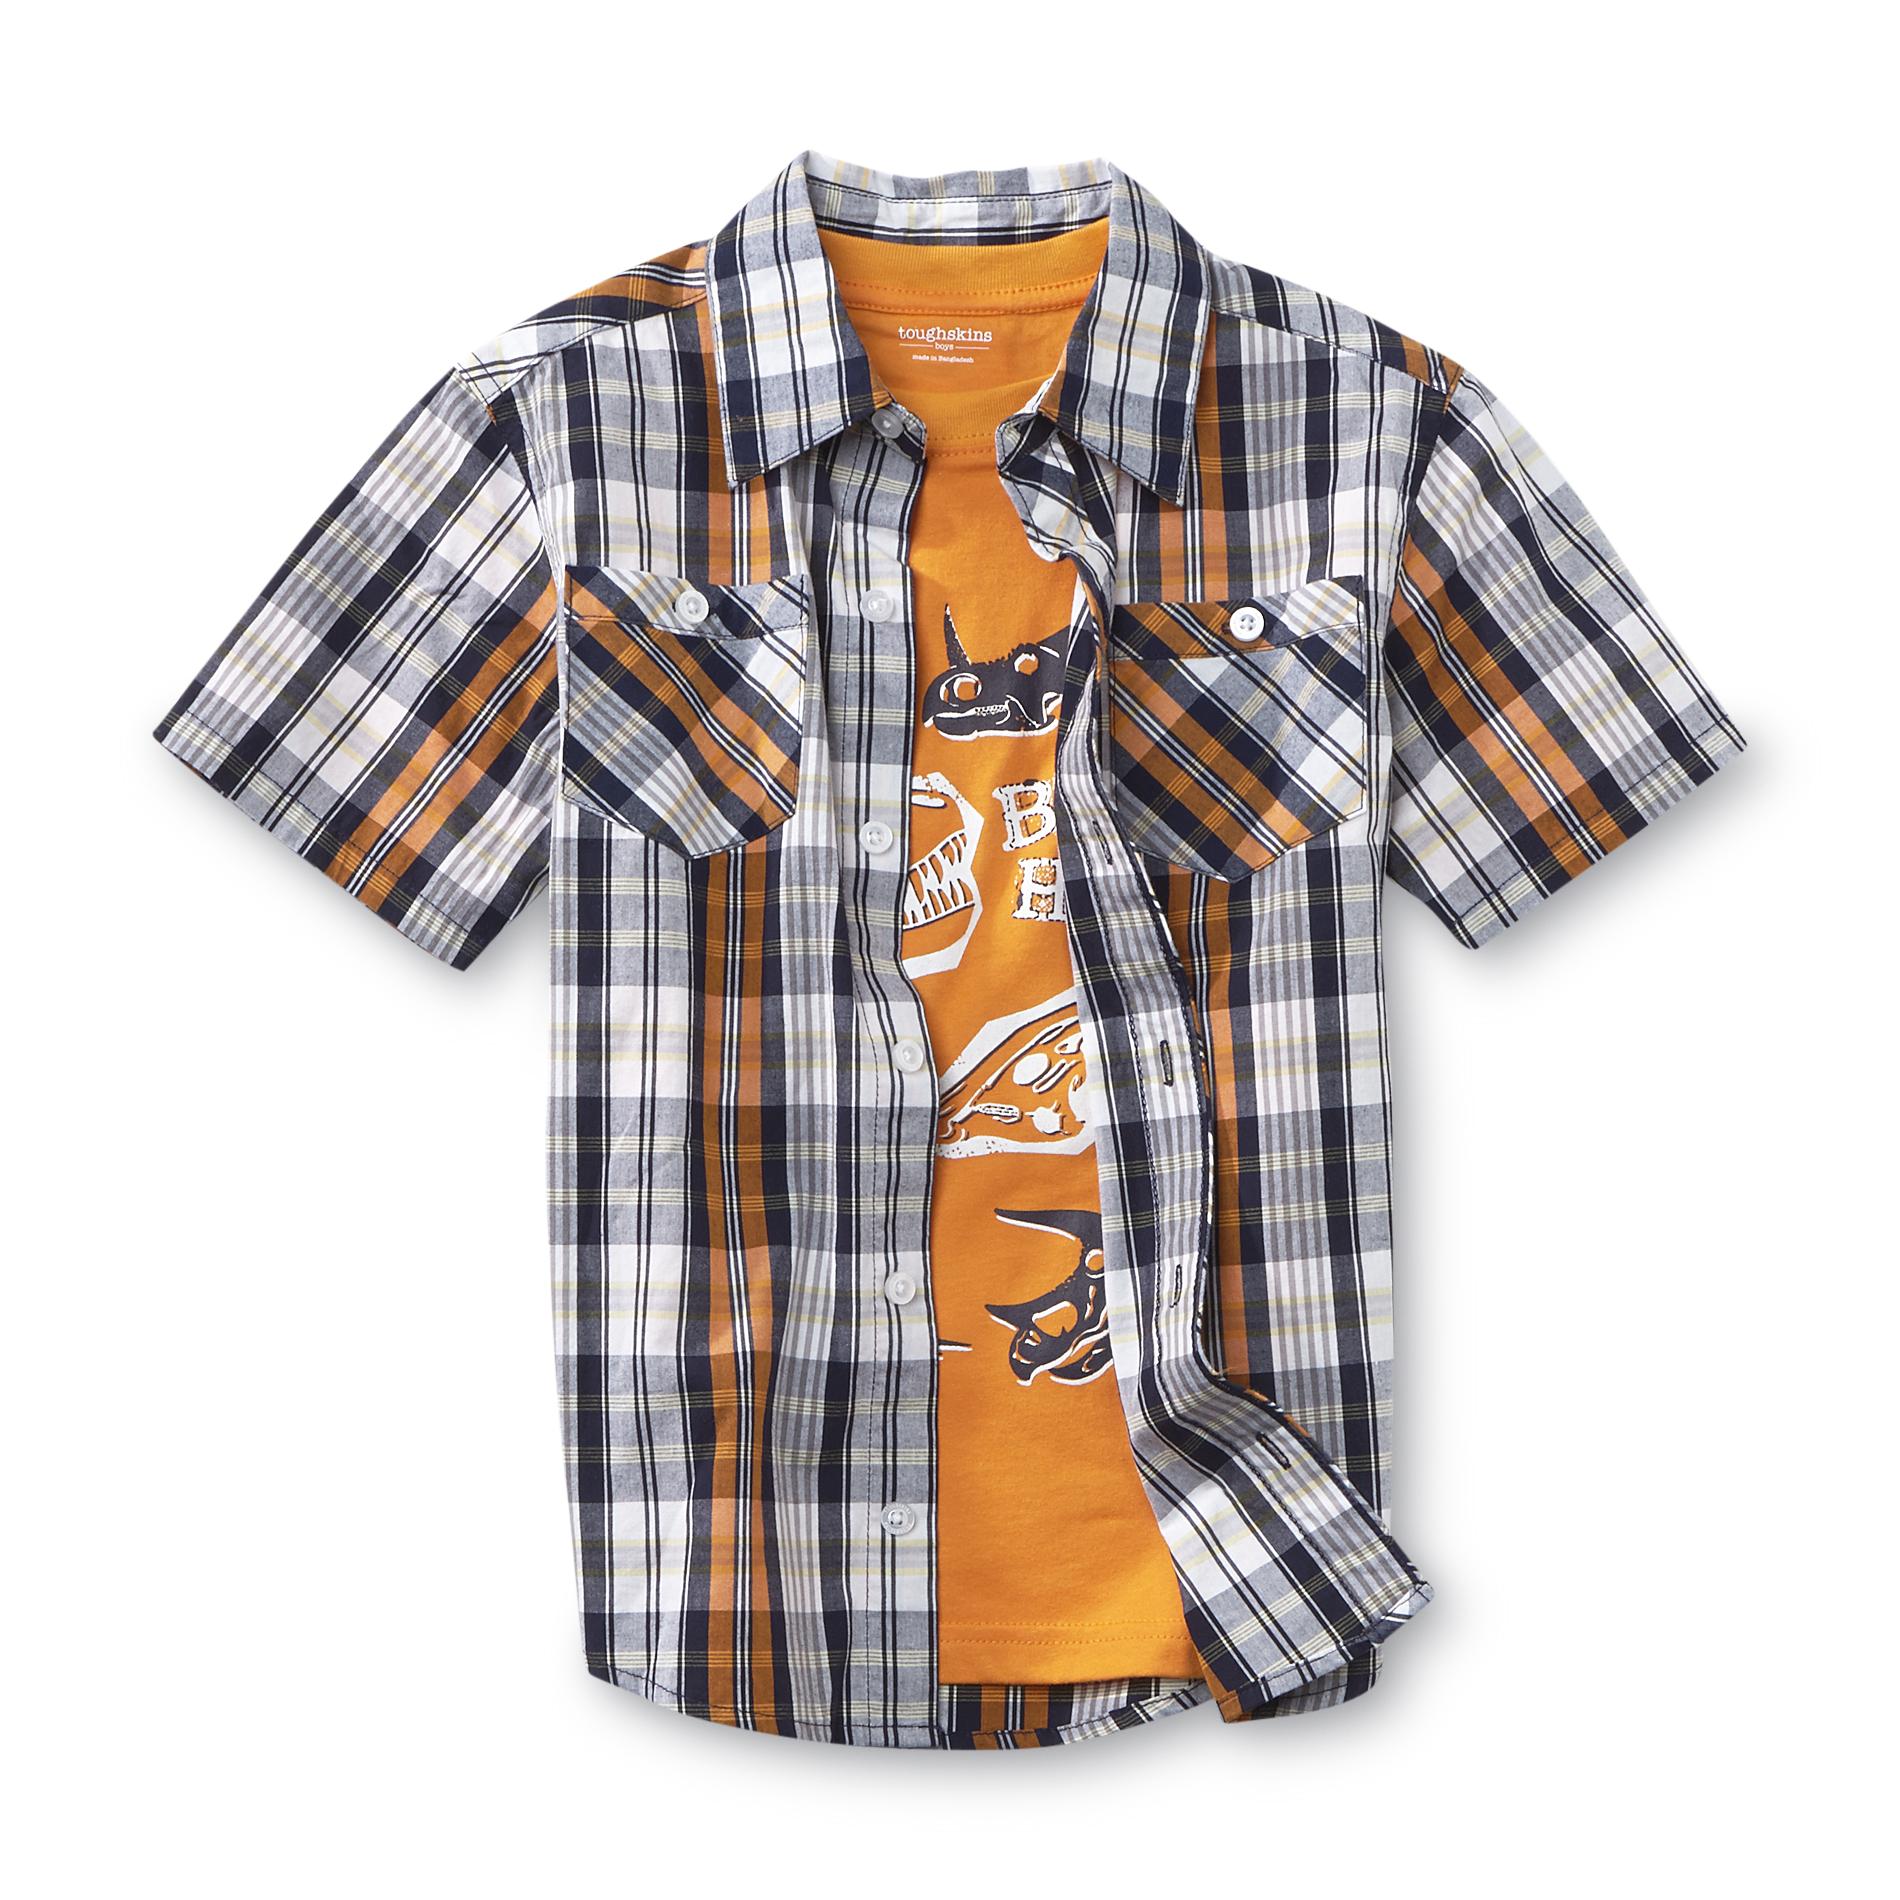 Toughskins Boy's Button-Front Shirt & Graphic T-Shirt - Dinosaur